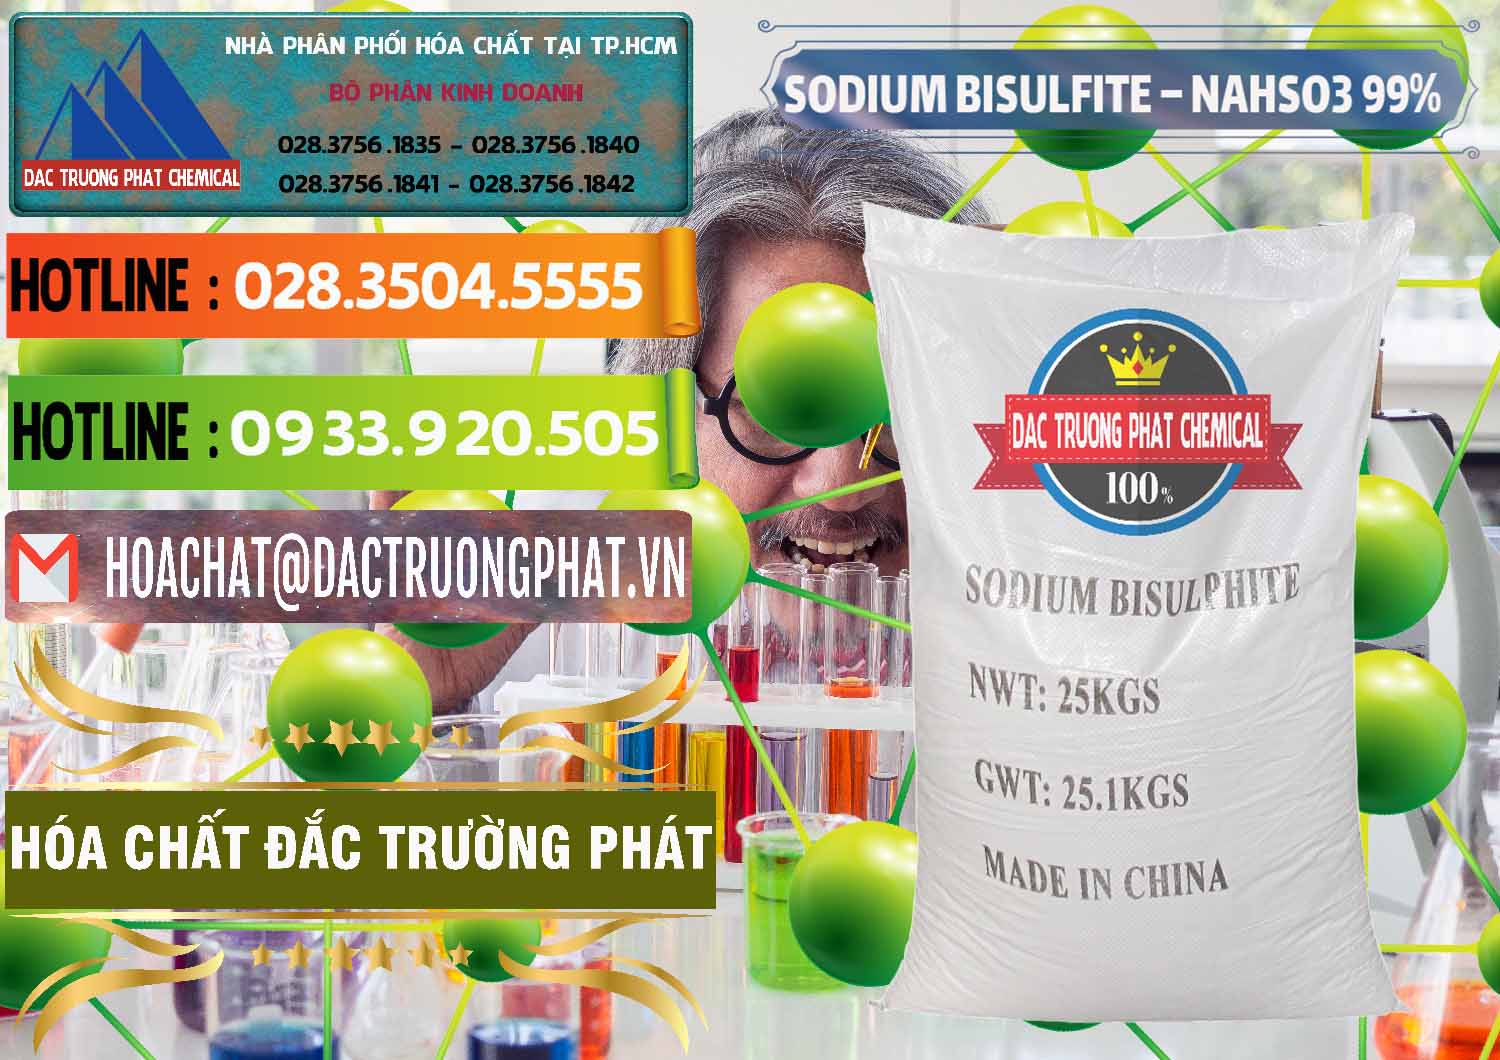 Cung ứng và bán Sodium Bisulfite – NAHSO3 Trung Quốc China - 0140 - Cty chuyên cung cấp và kinh doanh hóa chất tại TP.HCM - cungcaphoachat.com.vn